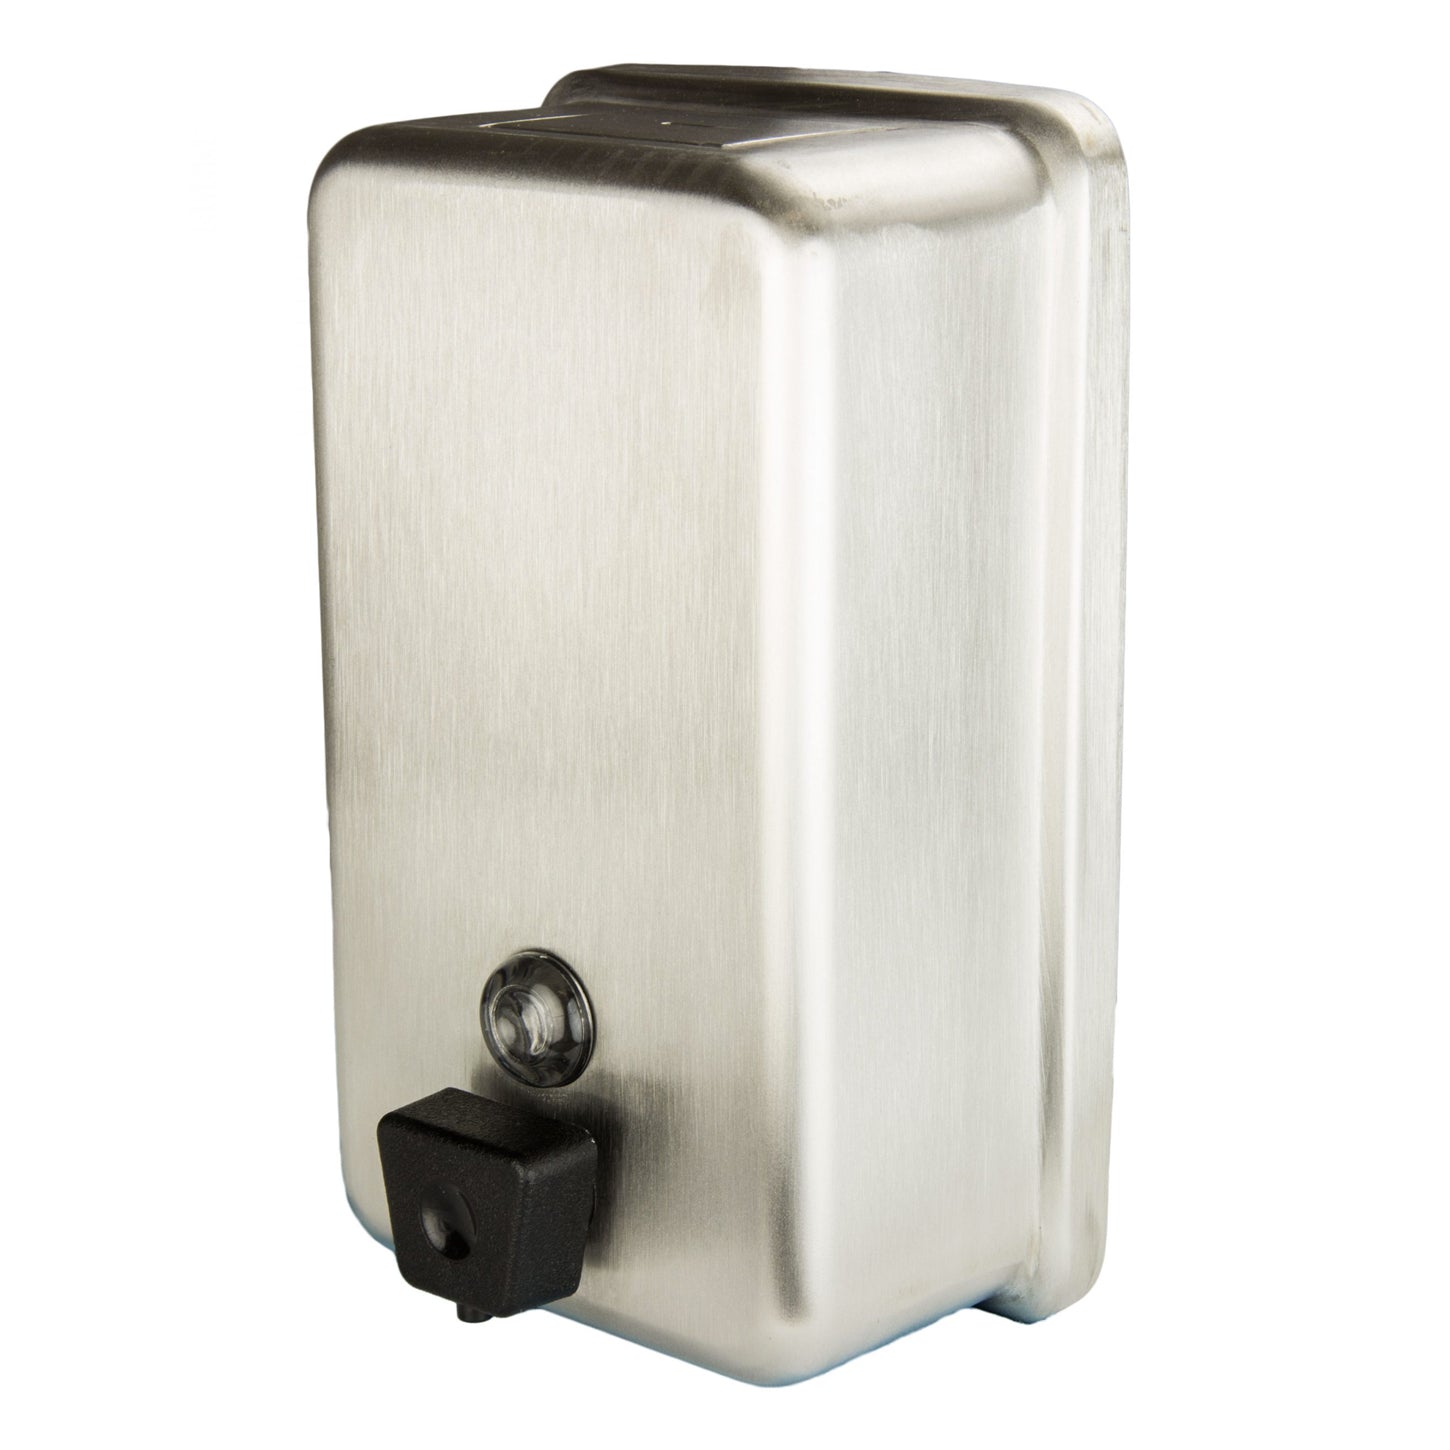 Dispenser Soap Bulk Stainless Steel Vertical